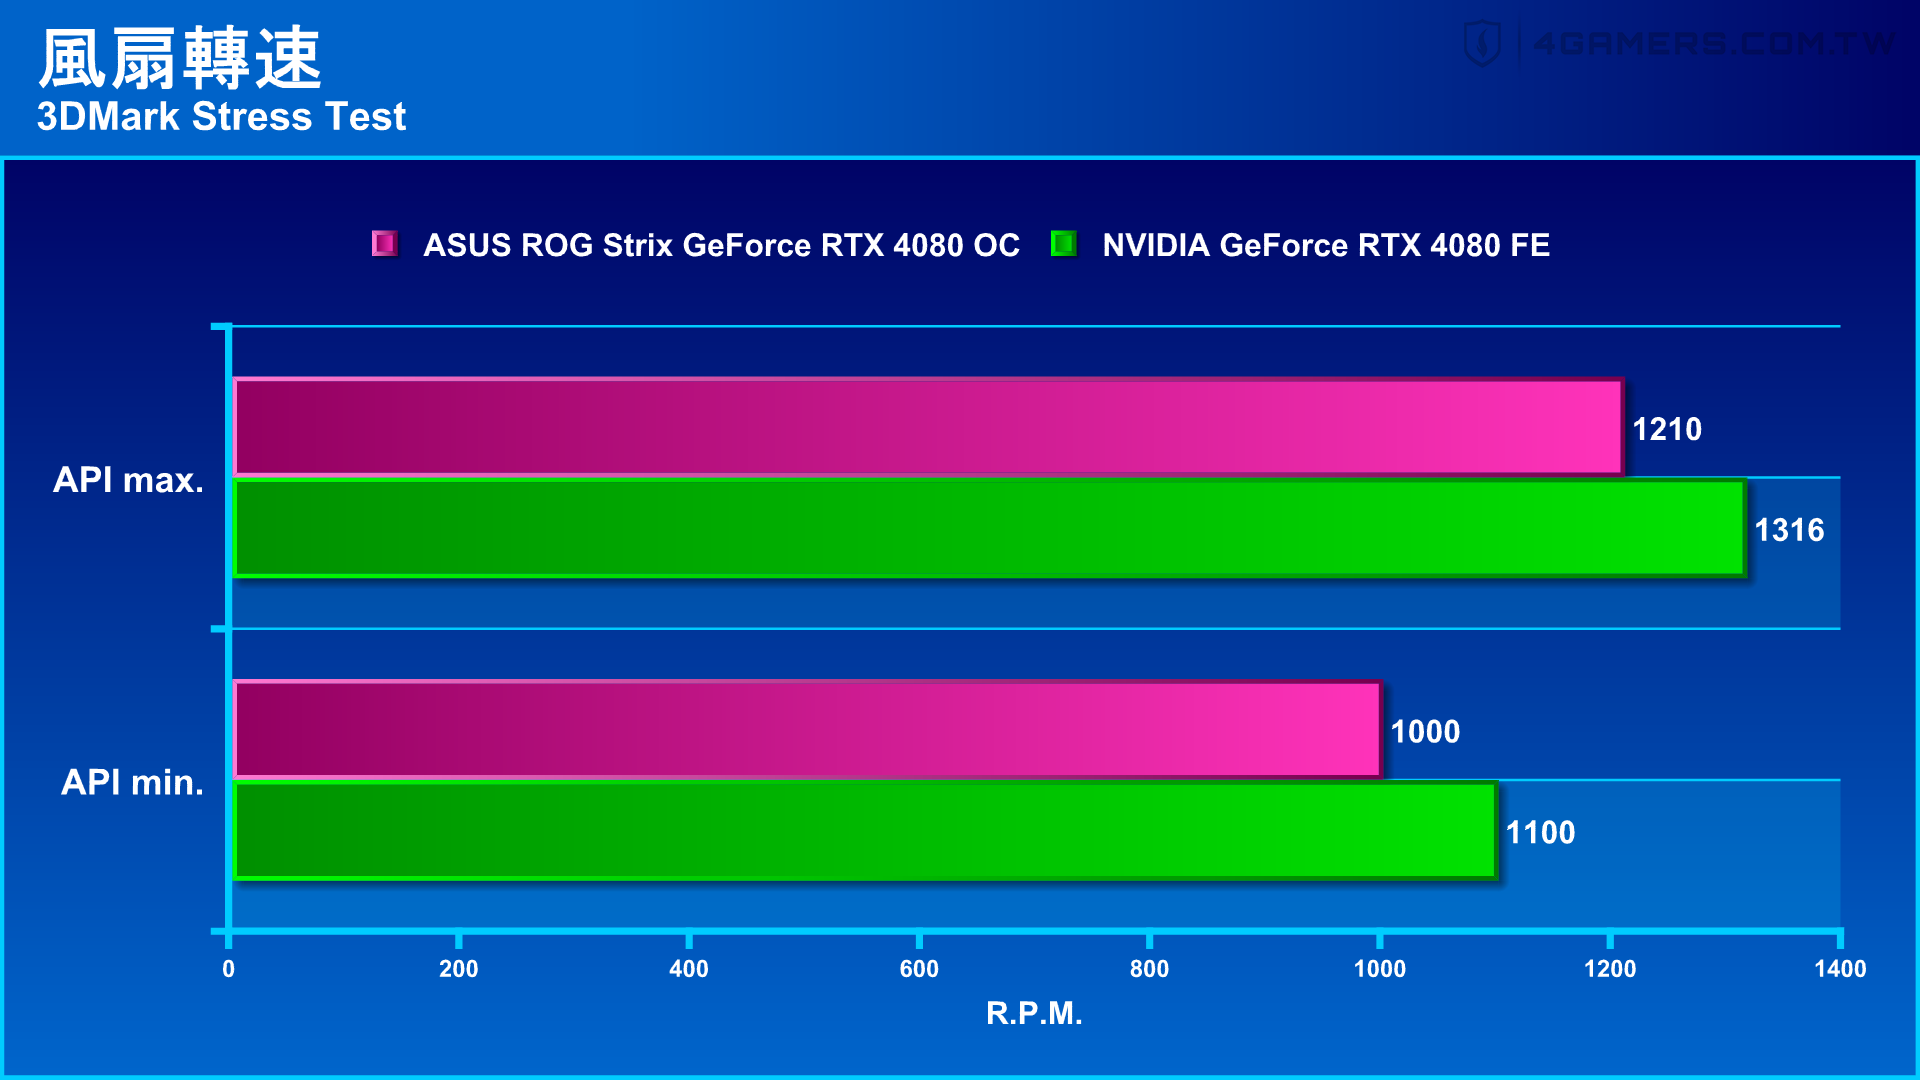 ASUS ROG Strix GeForce RTX 4080 OC